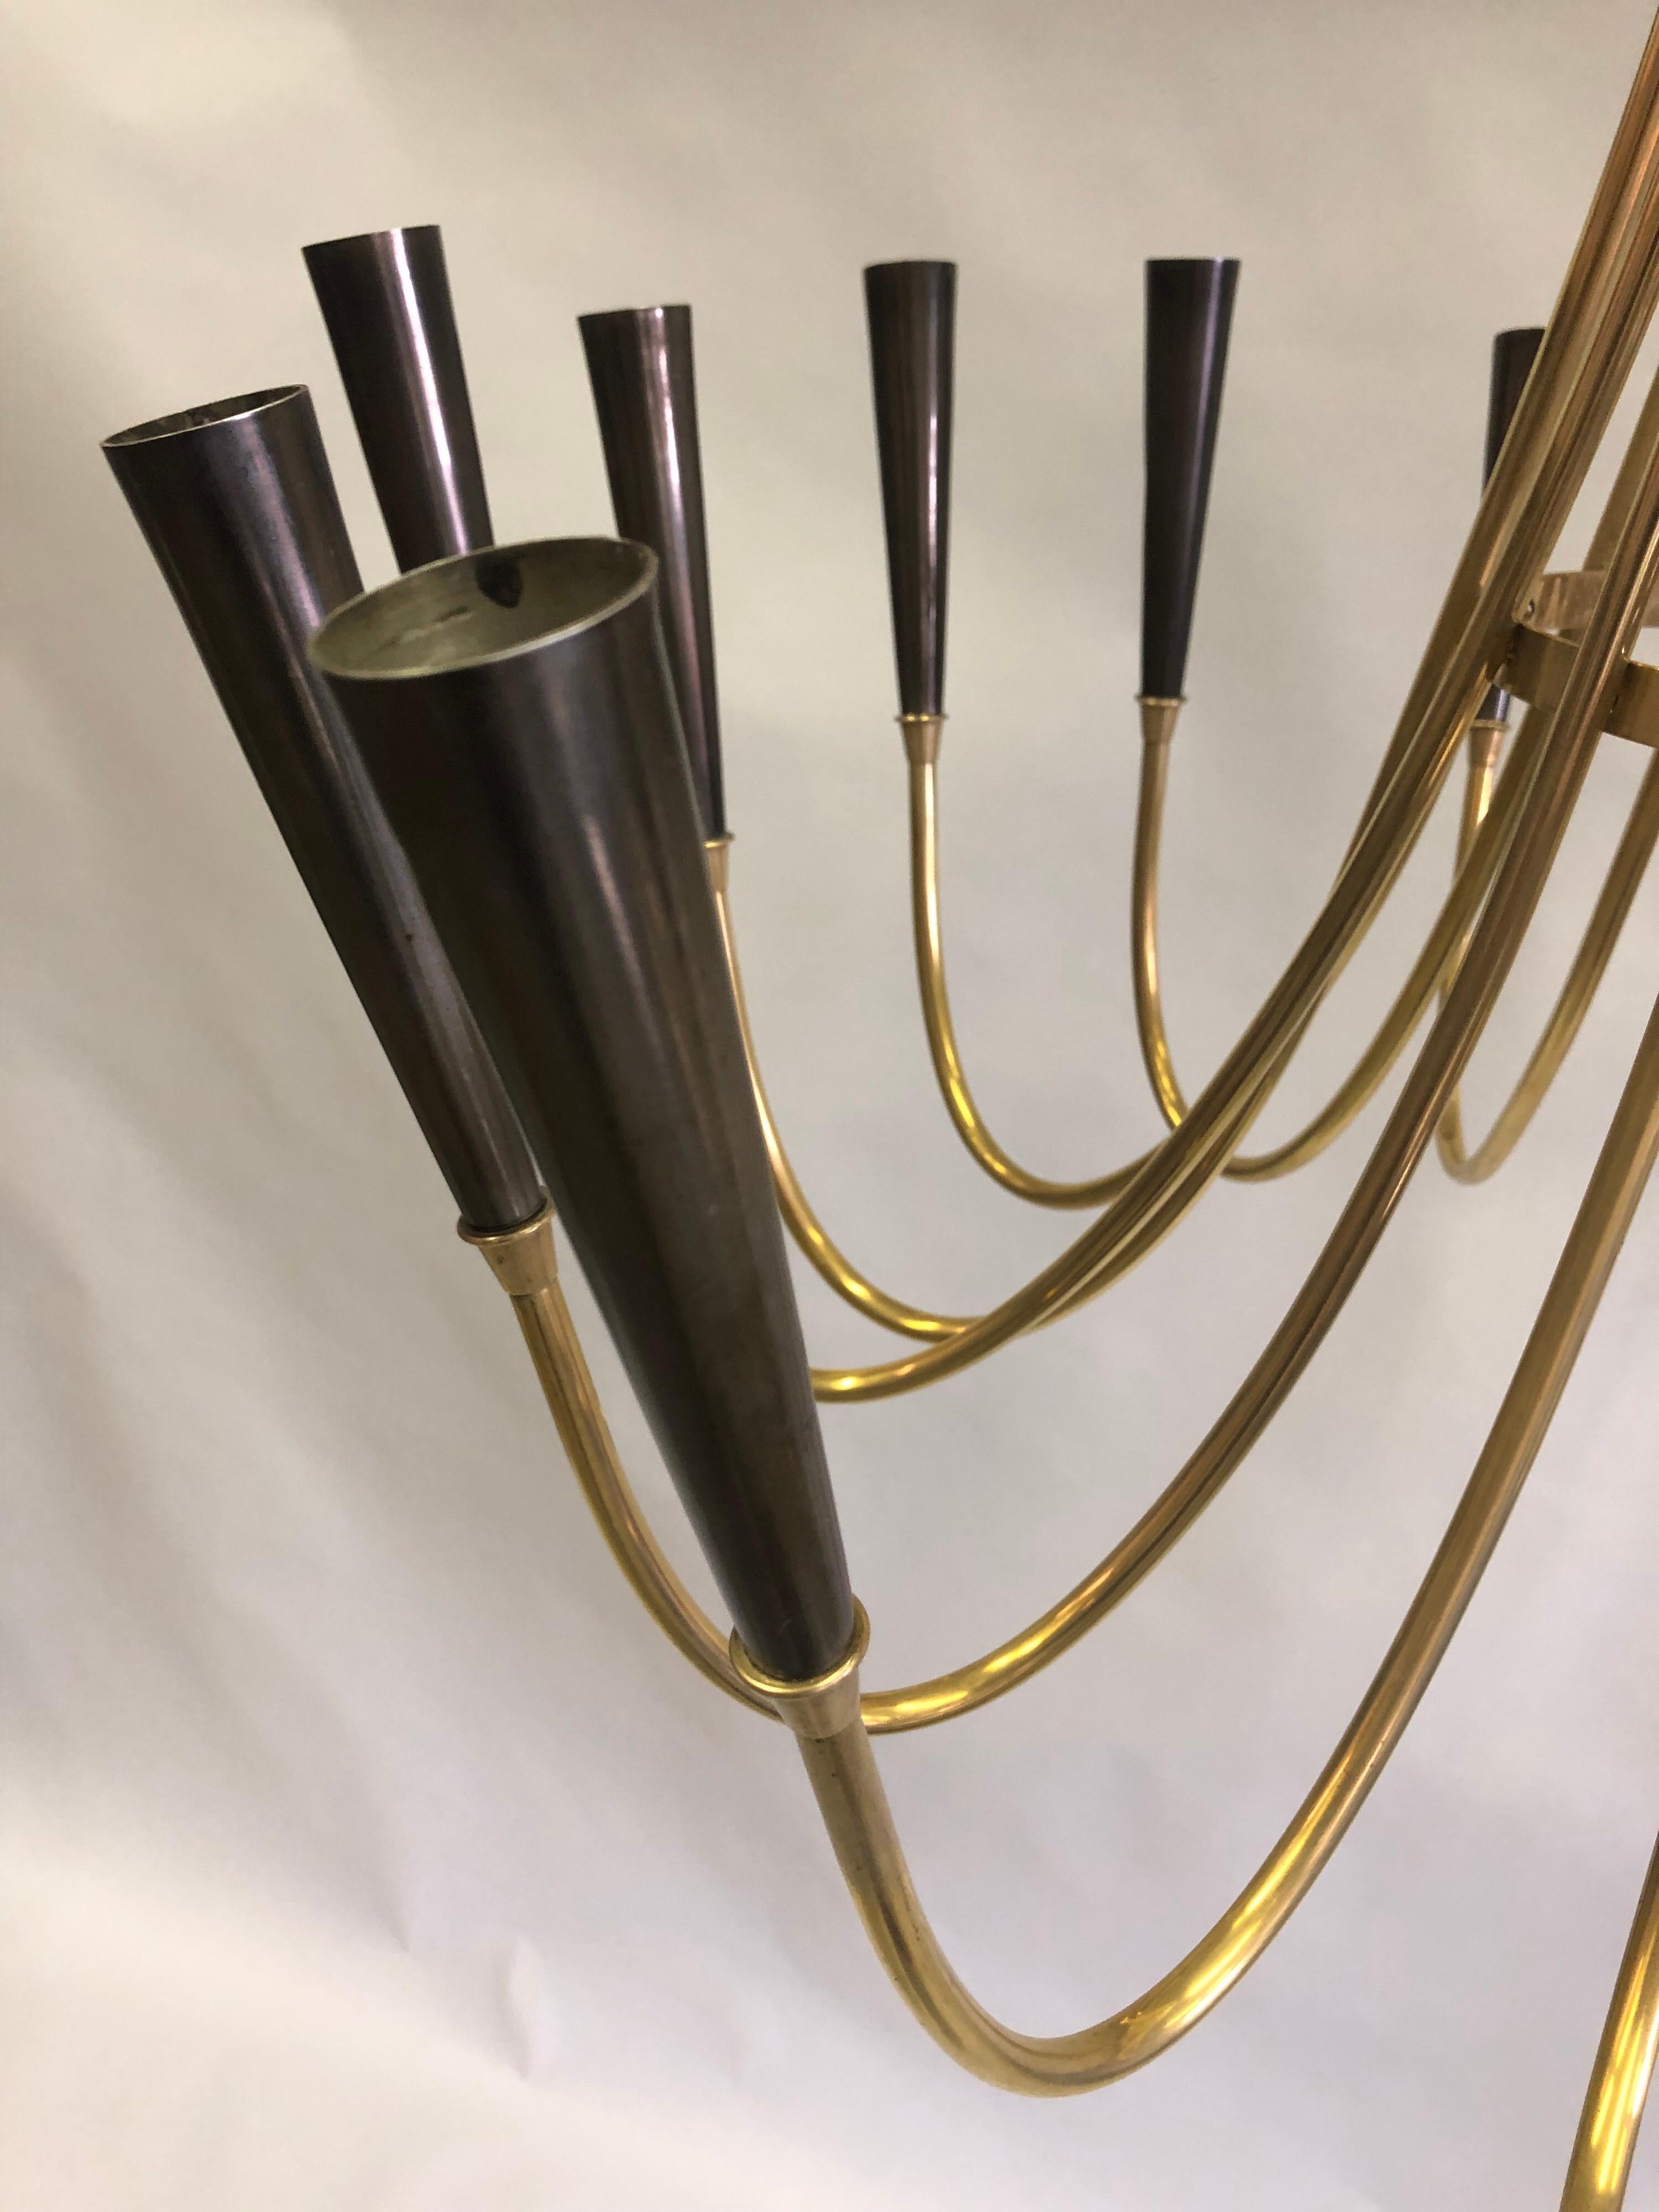 Italian Midcentury Brass Sunburst Chandelier Attributed to Guglielmo Ulrich For Sale 1